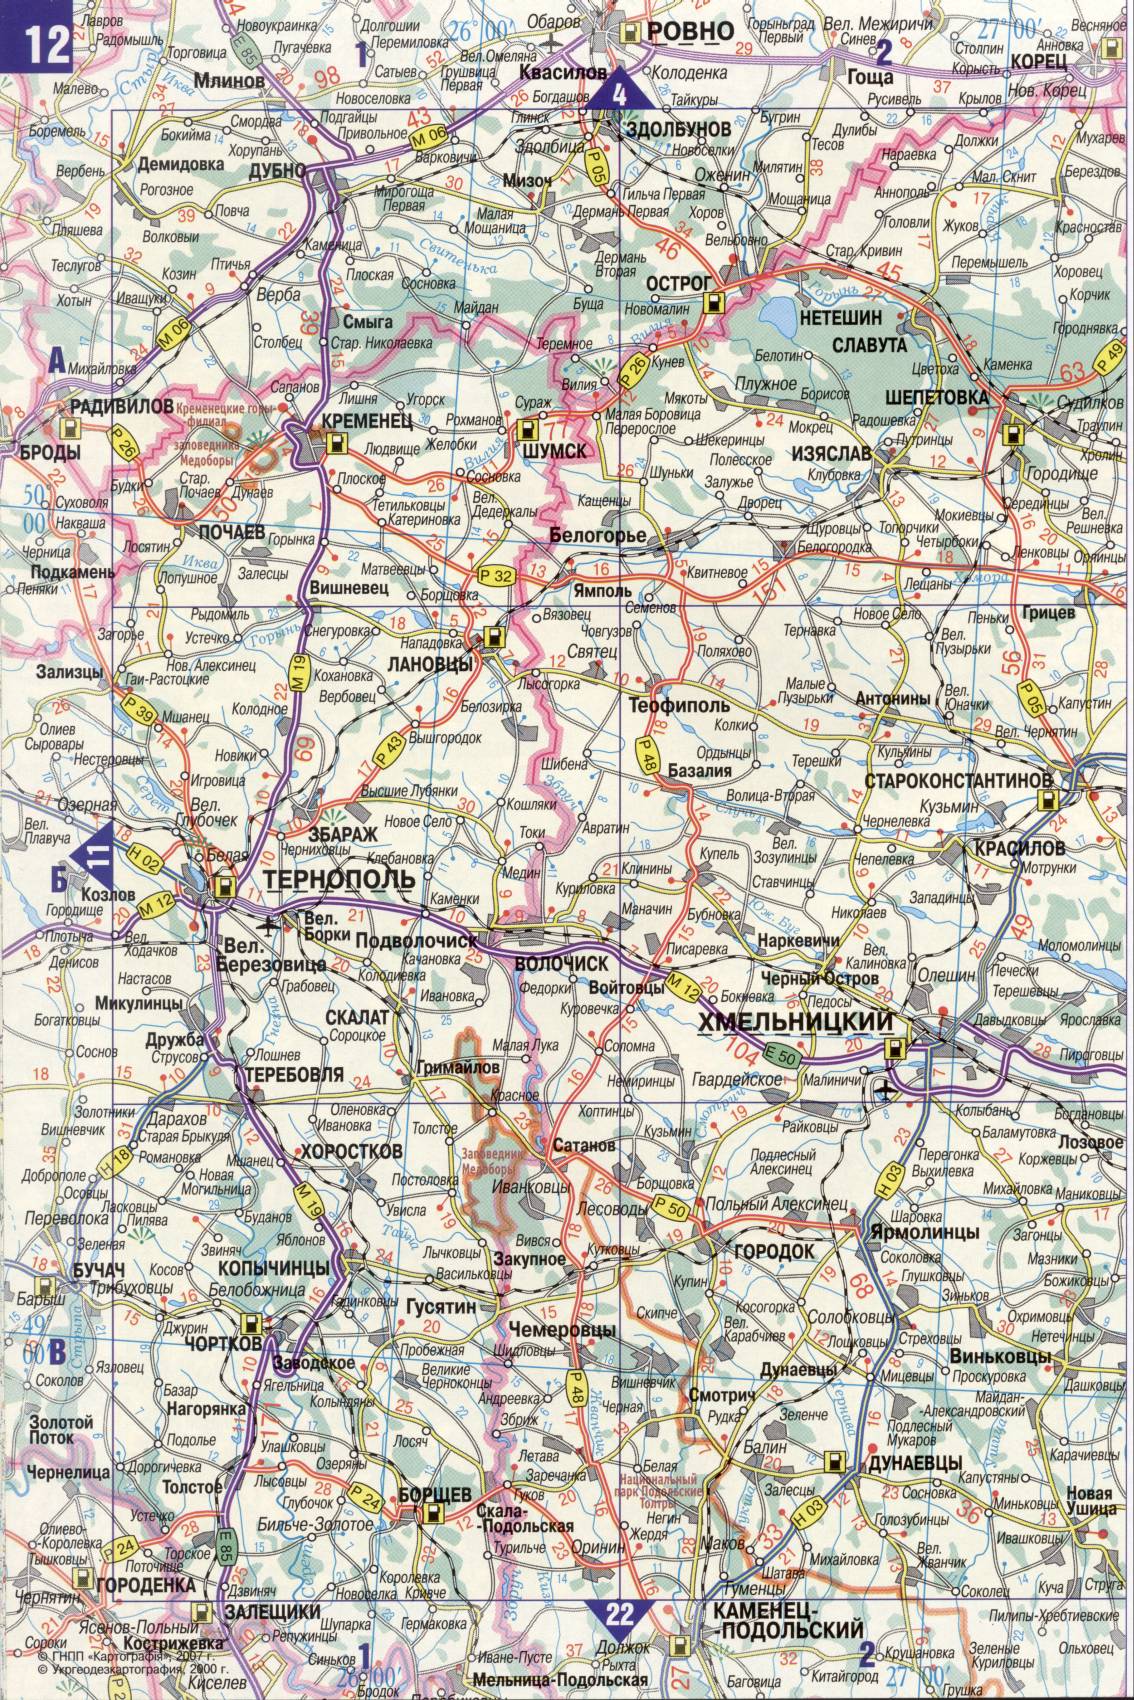 Карта Украины. Подробная карта дорог Украина из автомобильног атласа. скачать бесплатно, C1